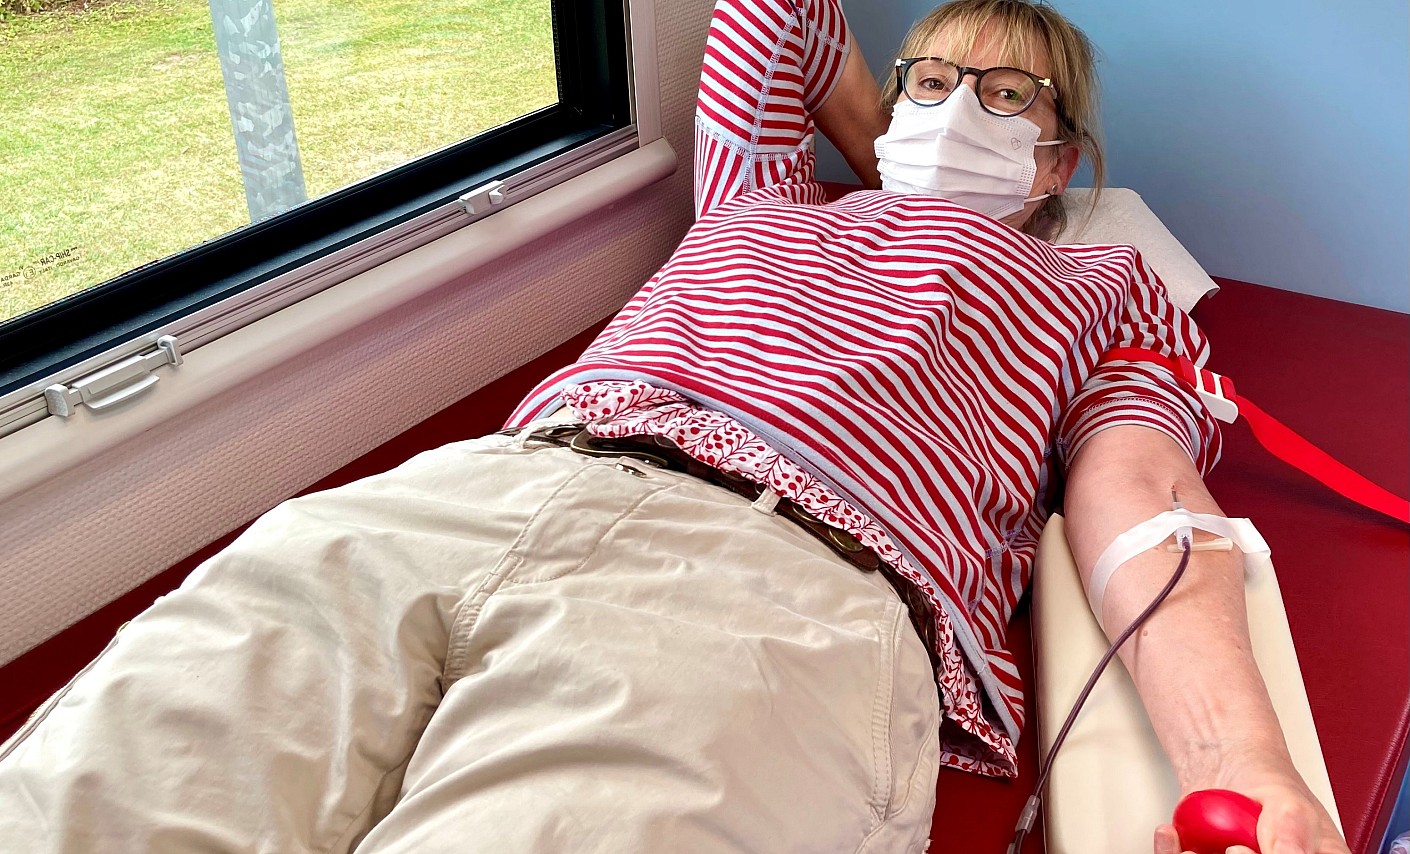 Blutspenderin Heike Rick spendet im DRK-Blutspendemobil in Kiel